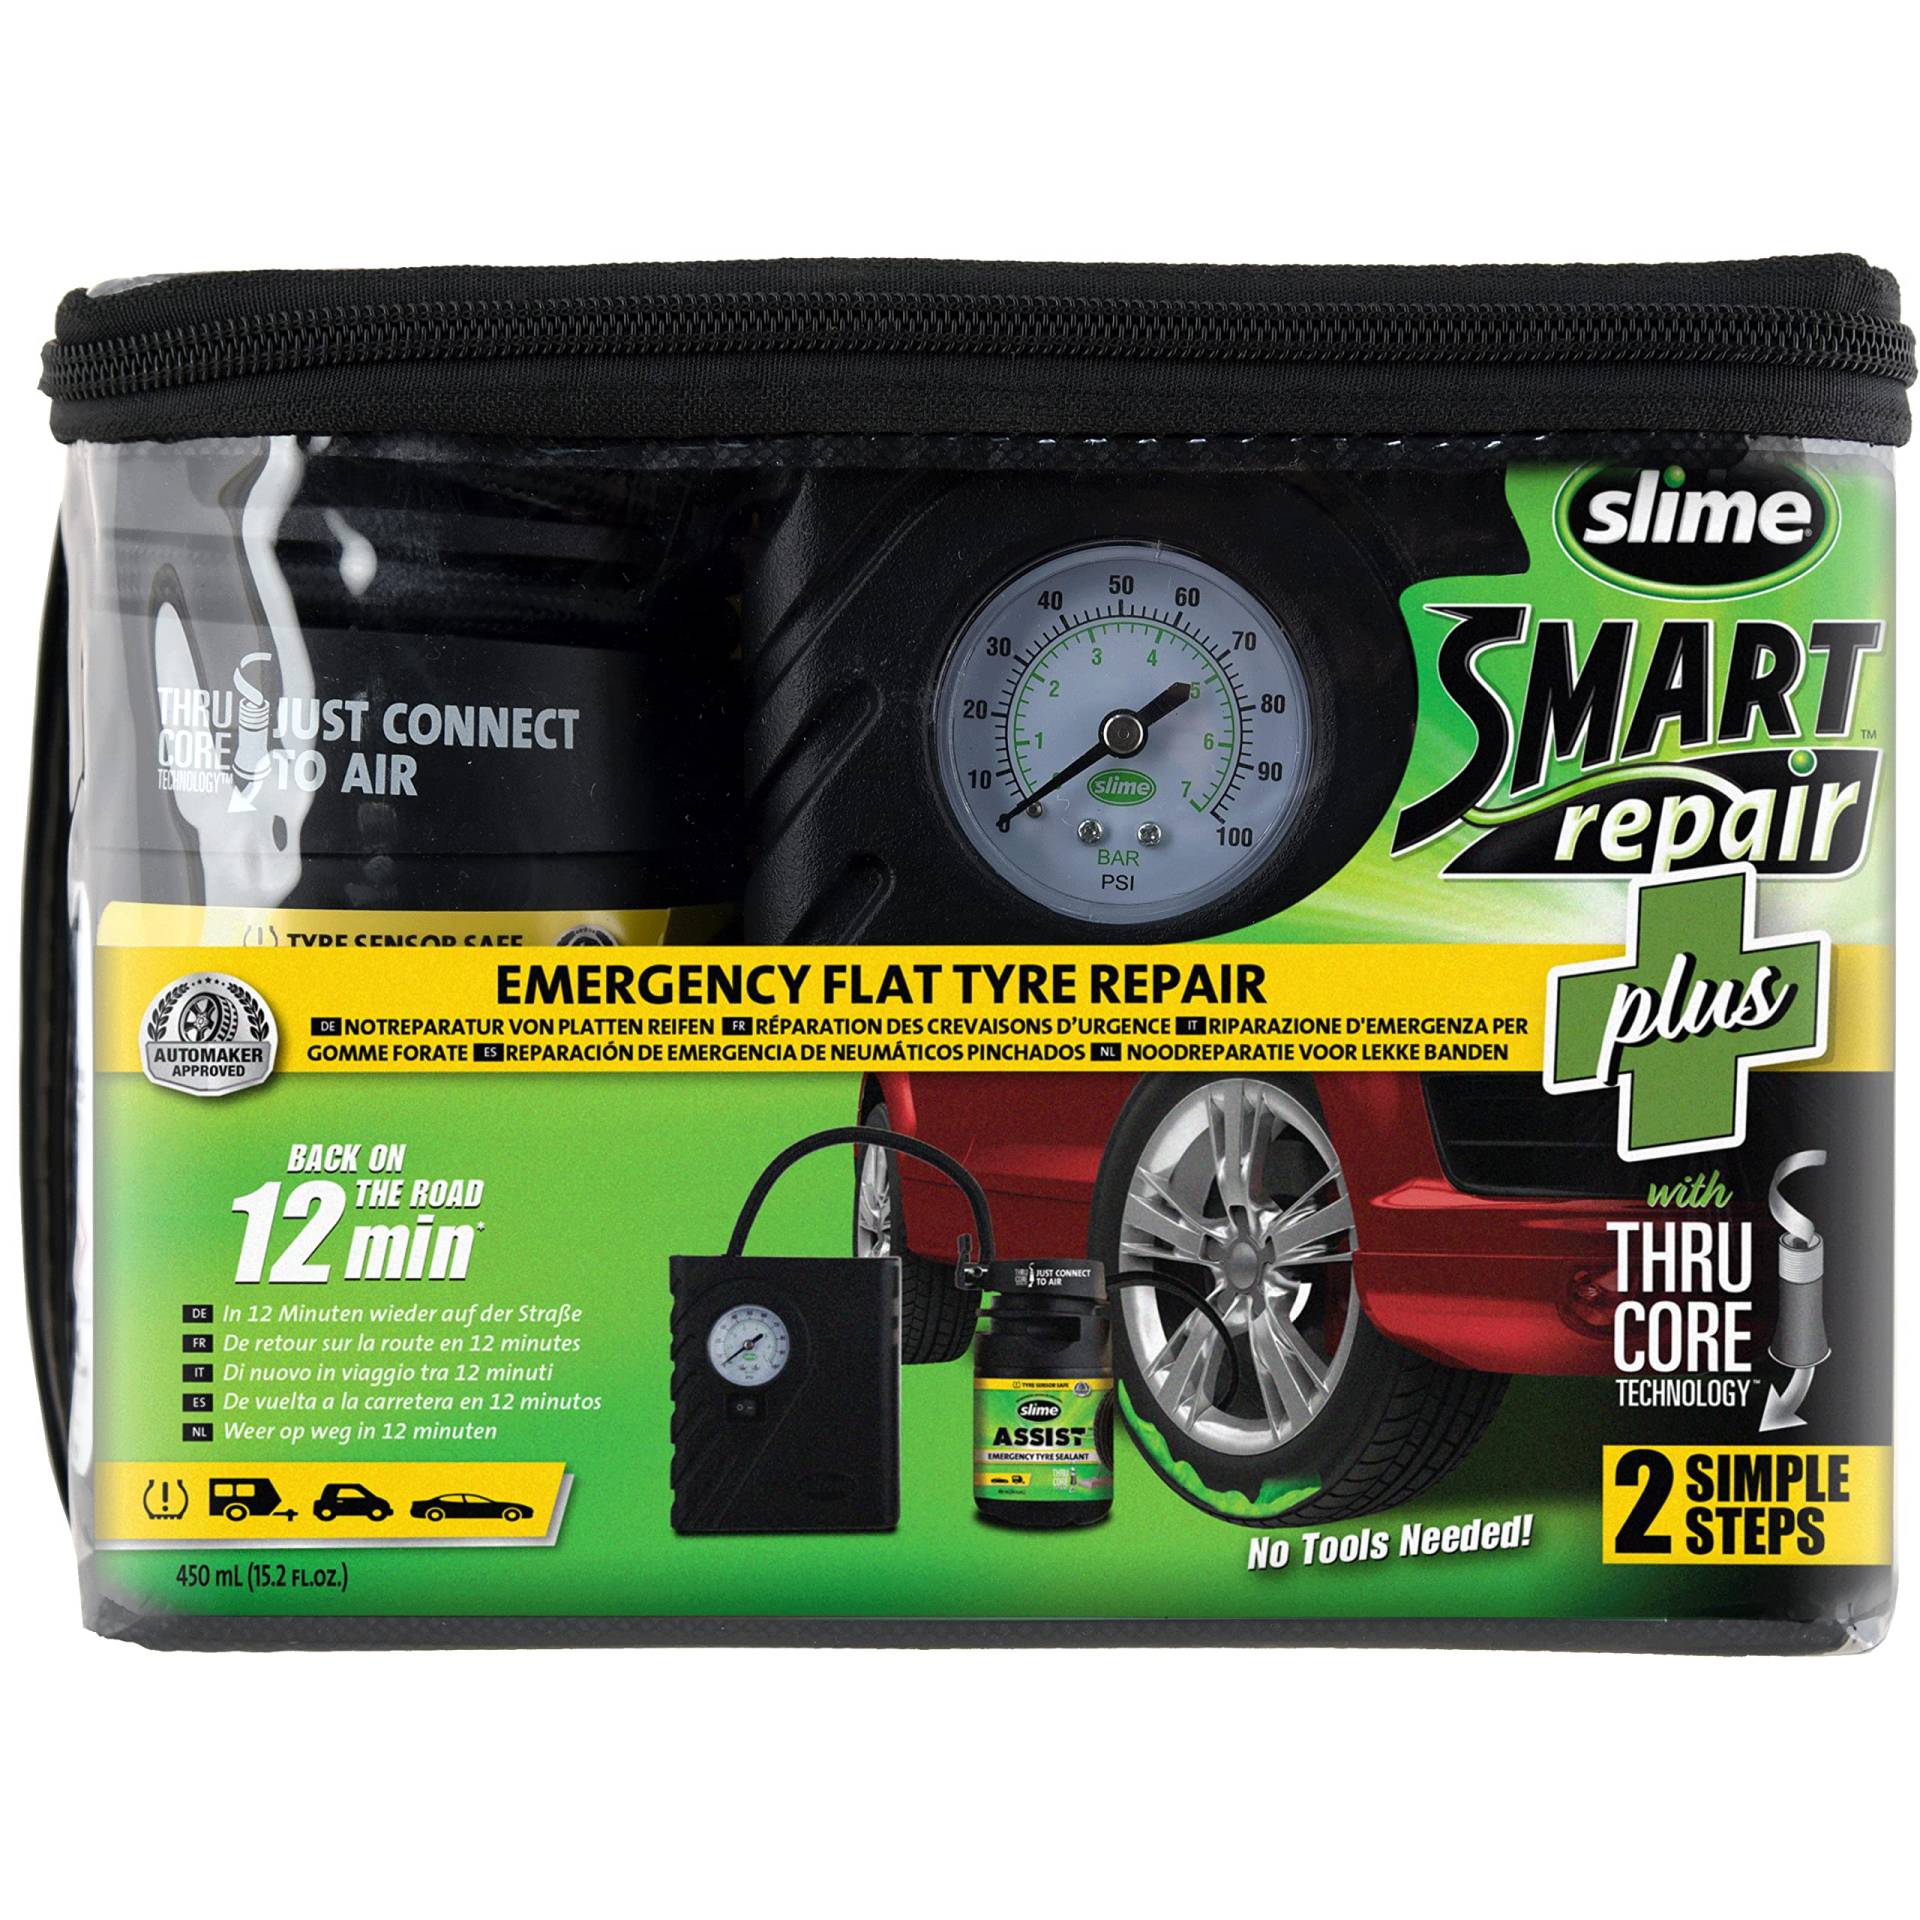 Slime 50138-51 Reifenpannen-Reparatur, Smart Repair Plus, Autoreifen-Notfallausrüstung, enthält Dichtmittel, geeignet für Autos und sonstige Autobahn-Fahrzeuge, Reparatur in 12 Min von Slime